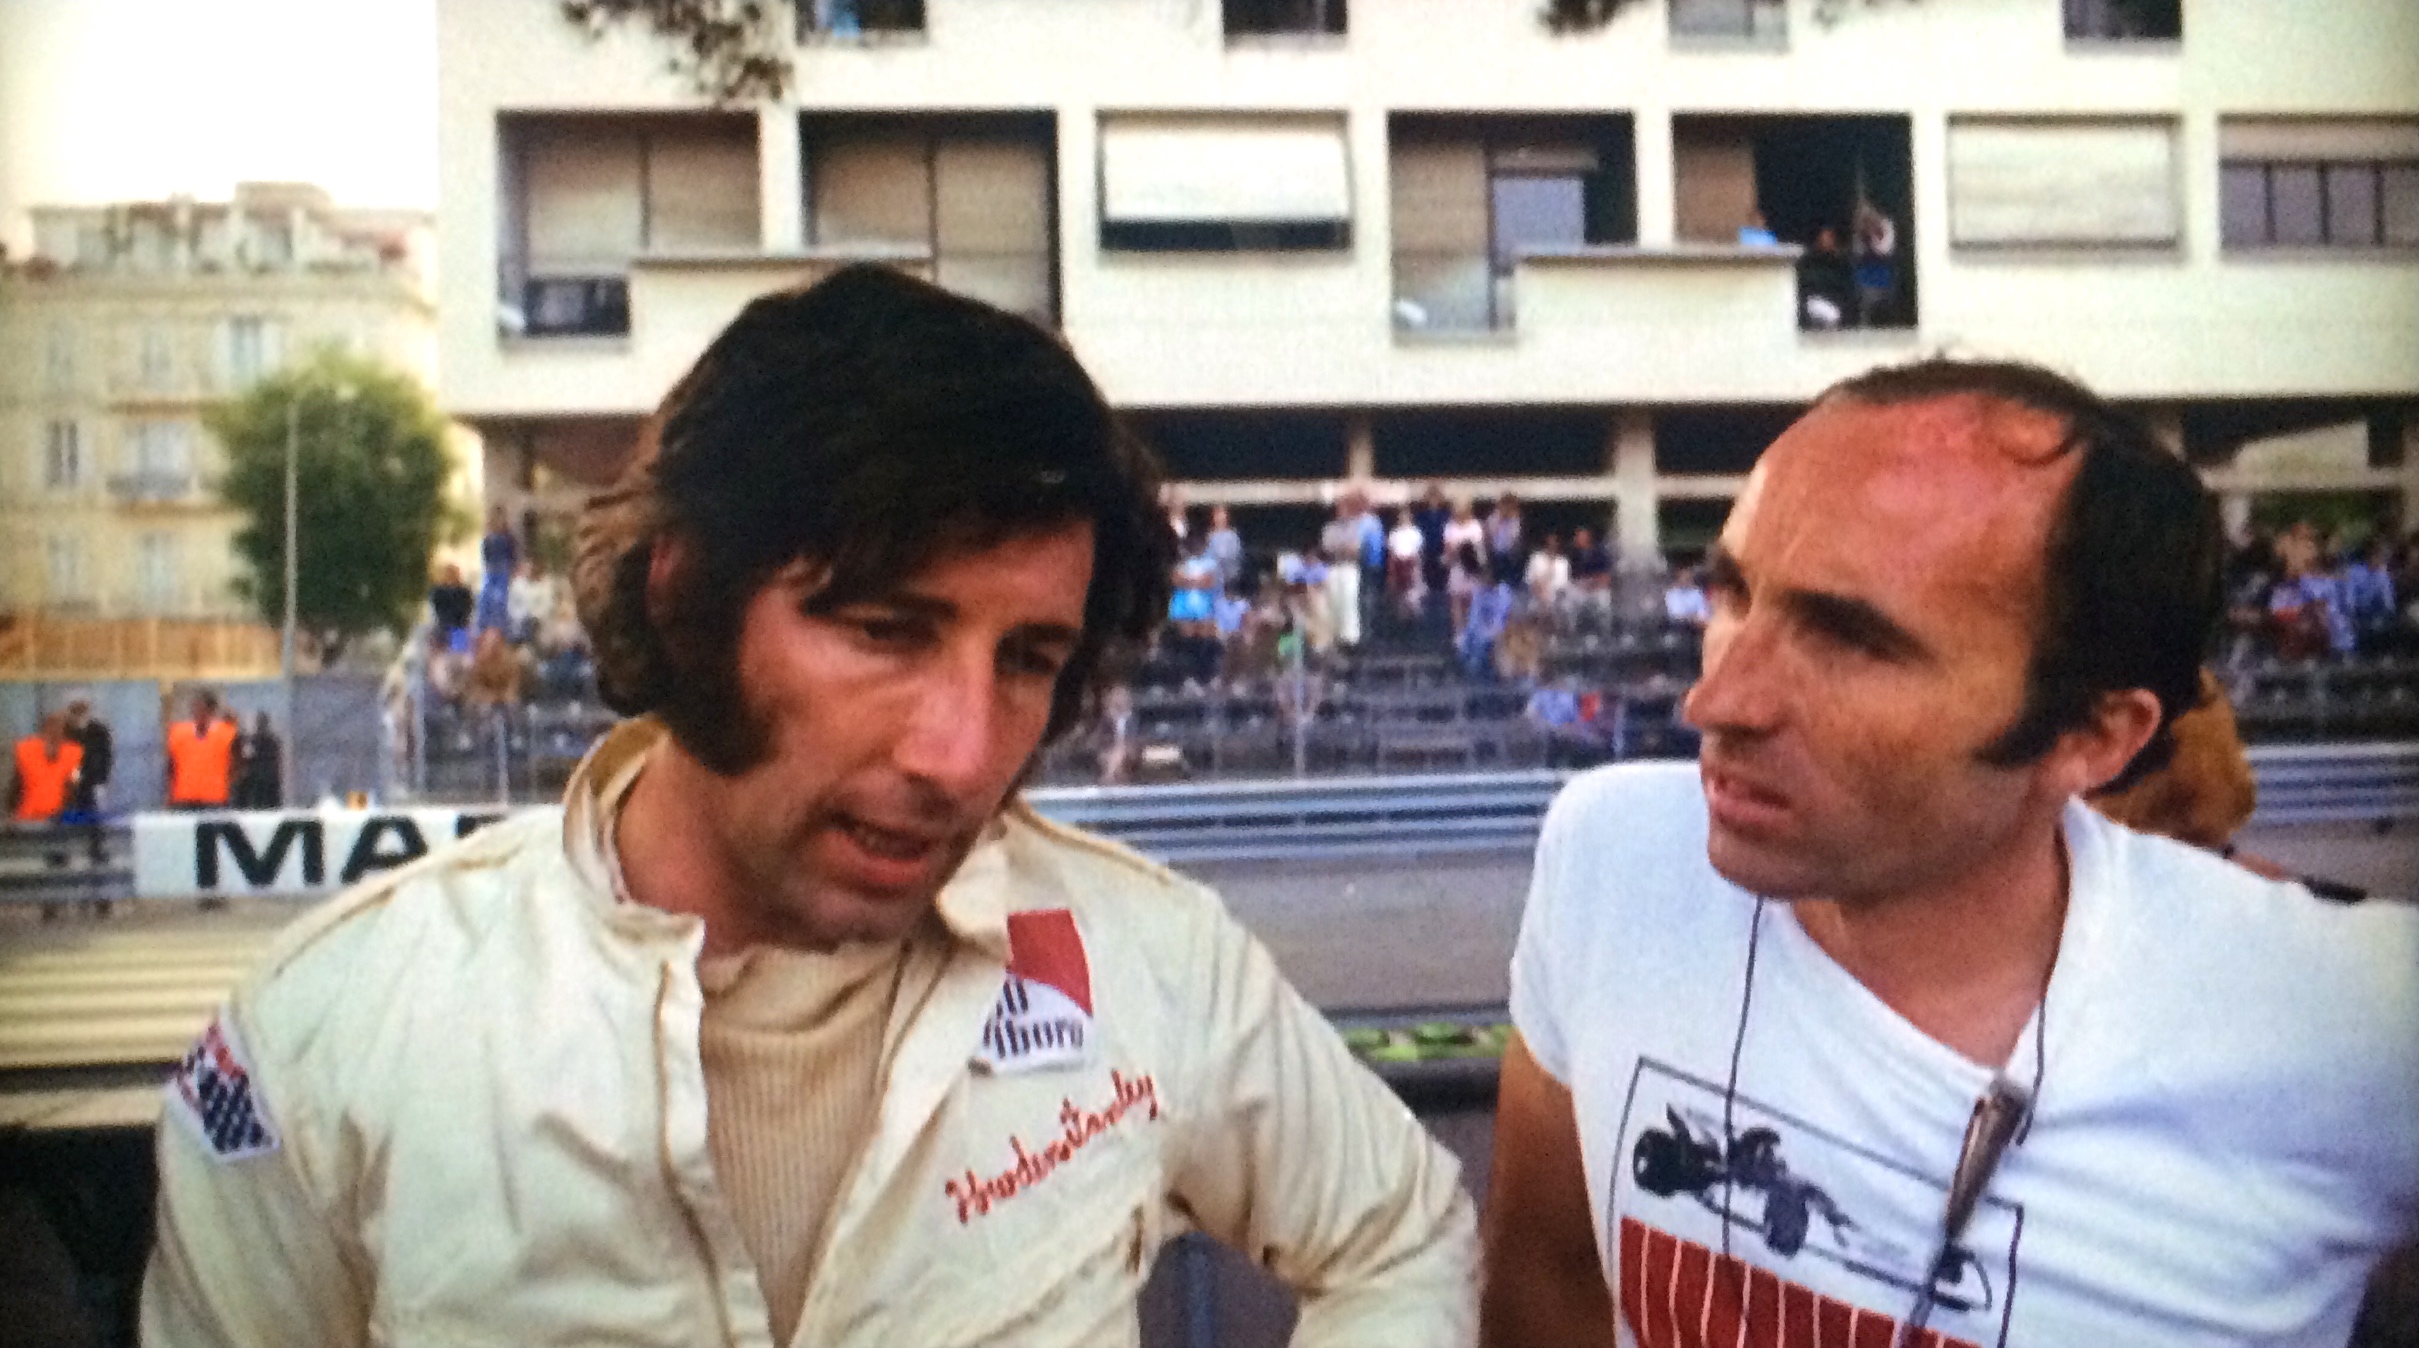 昔は良かっただなんて 言いたく無かったのに F1グランプリ 栄光の男たち ドキュメンタリー 映画 1975年 無差別八方美人